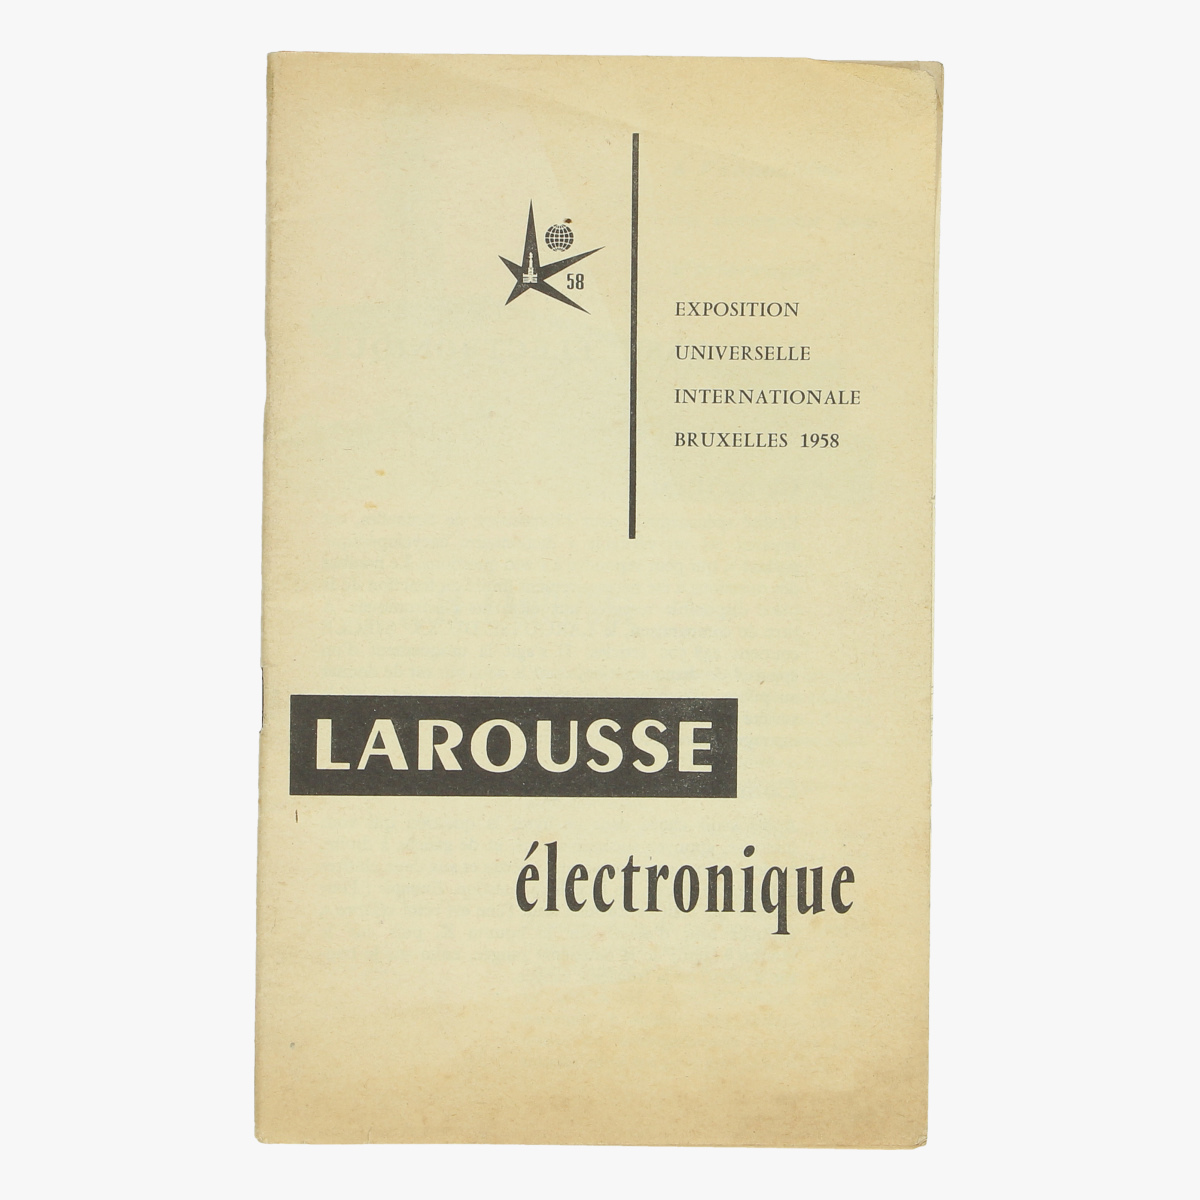 Afbeeldingen van expo 58 exposition universele internationale bxl 1958 larousse électronique